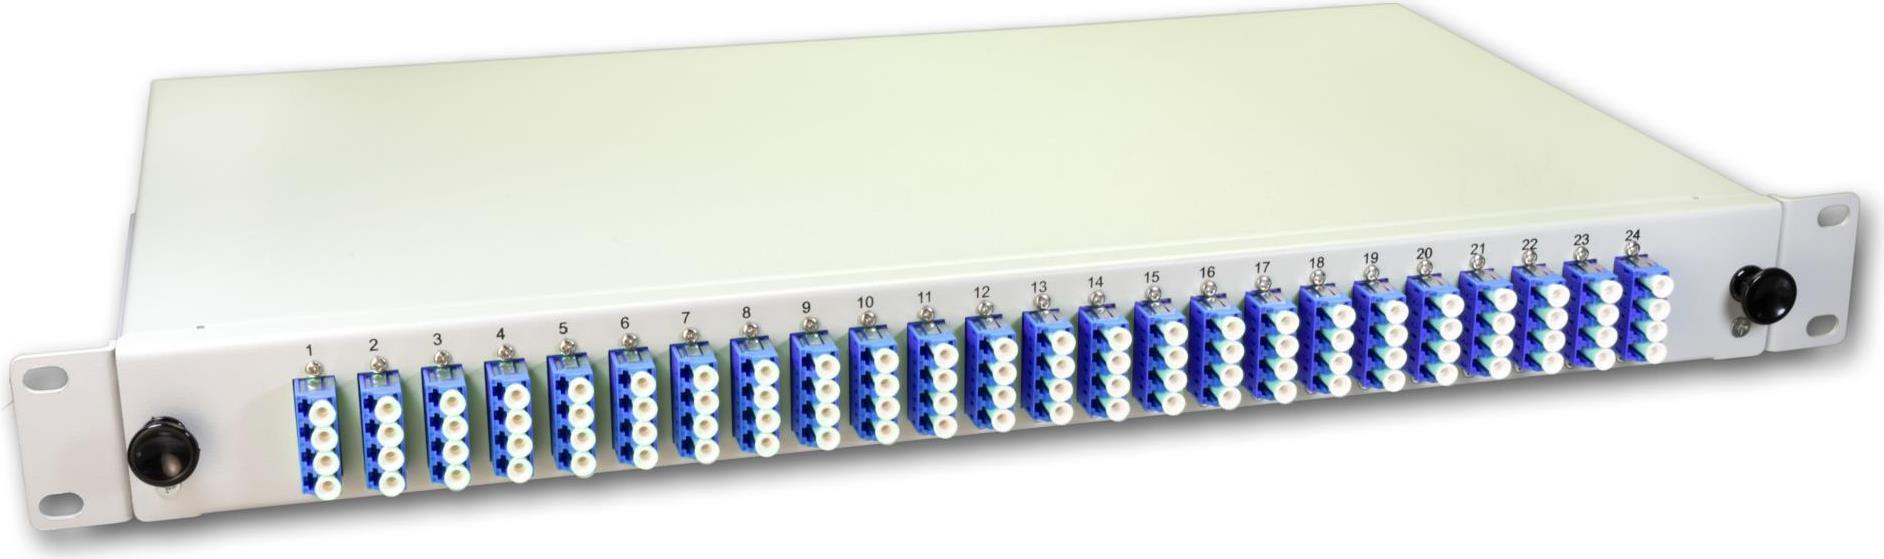 Lightwin LWL Spleissbox, 96 Fasern, 24x QLC Singlemode, 9/125µm OS2 G657.A1 Pigtail Spleißboxen (SPBOX 96E09 OS2 QLC)